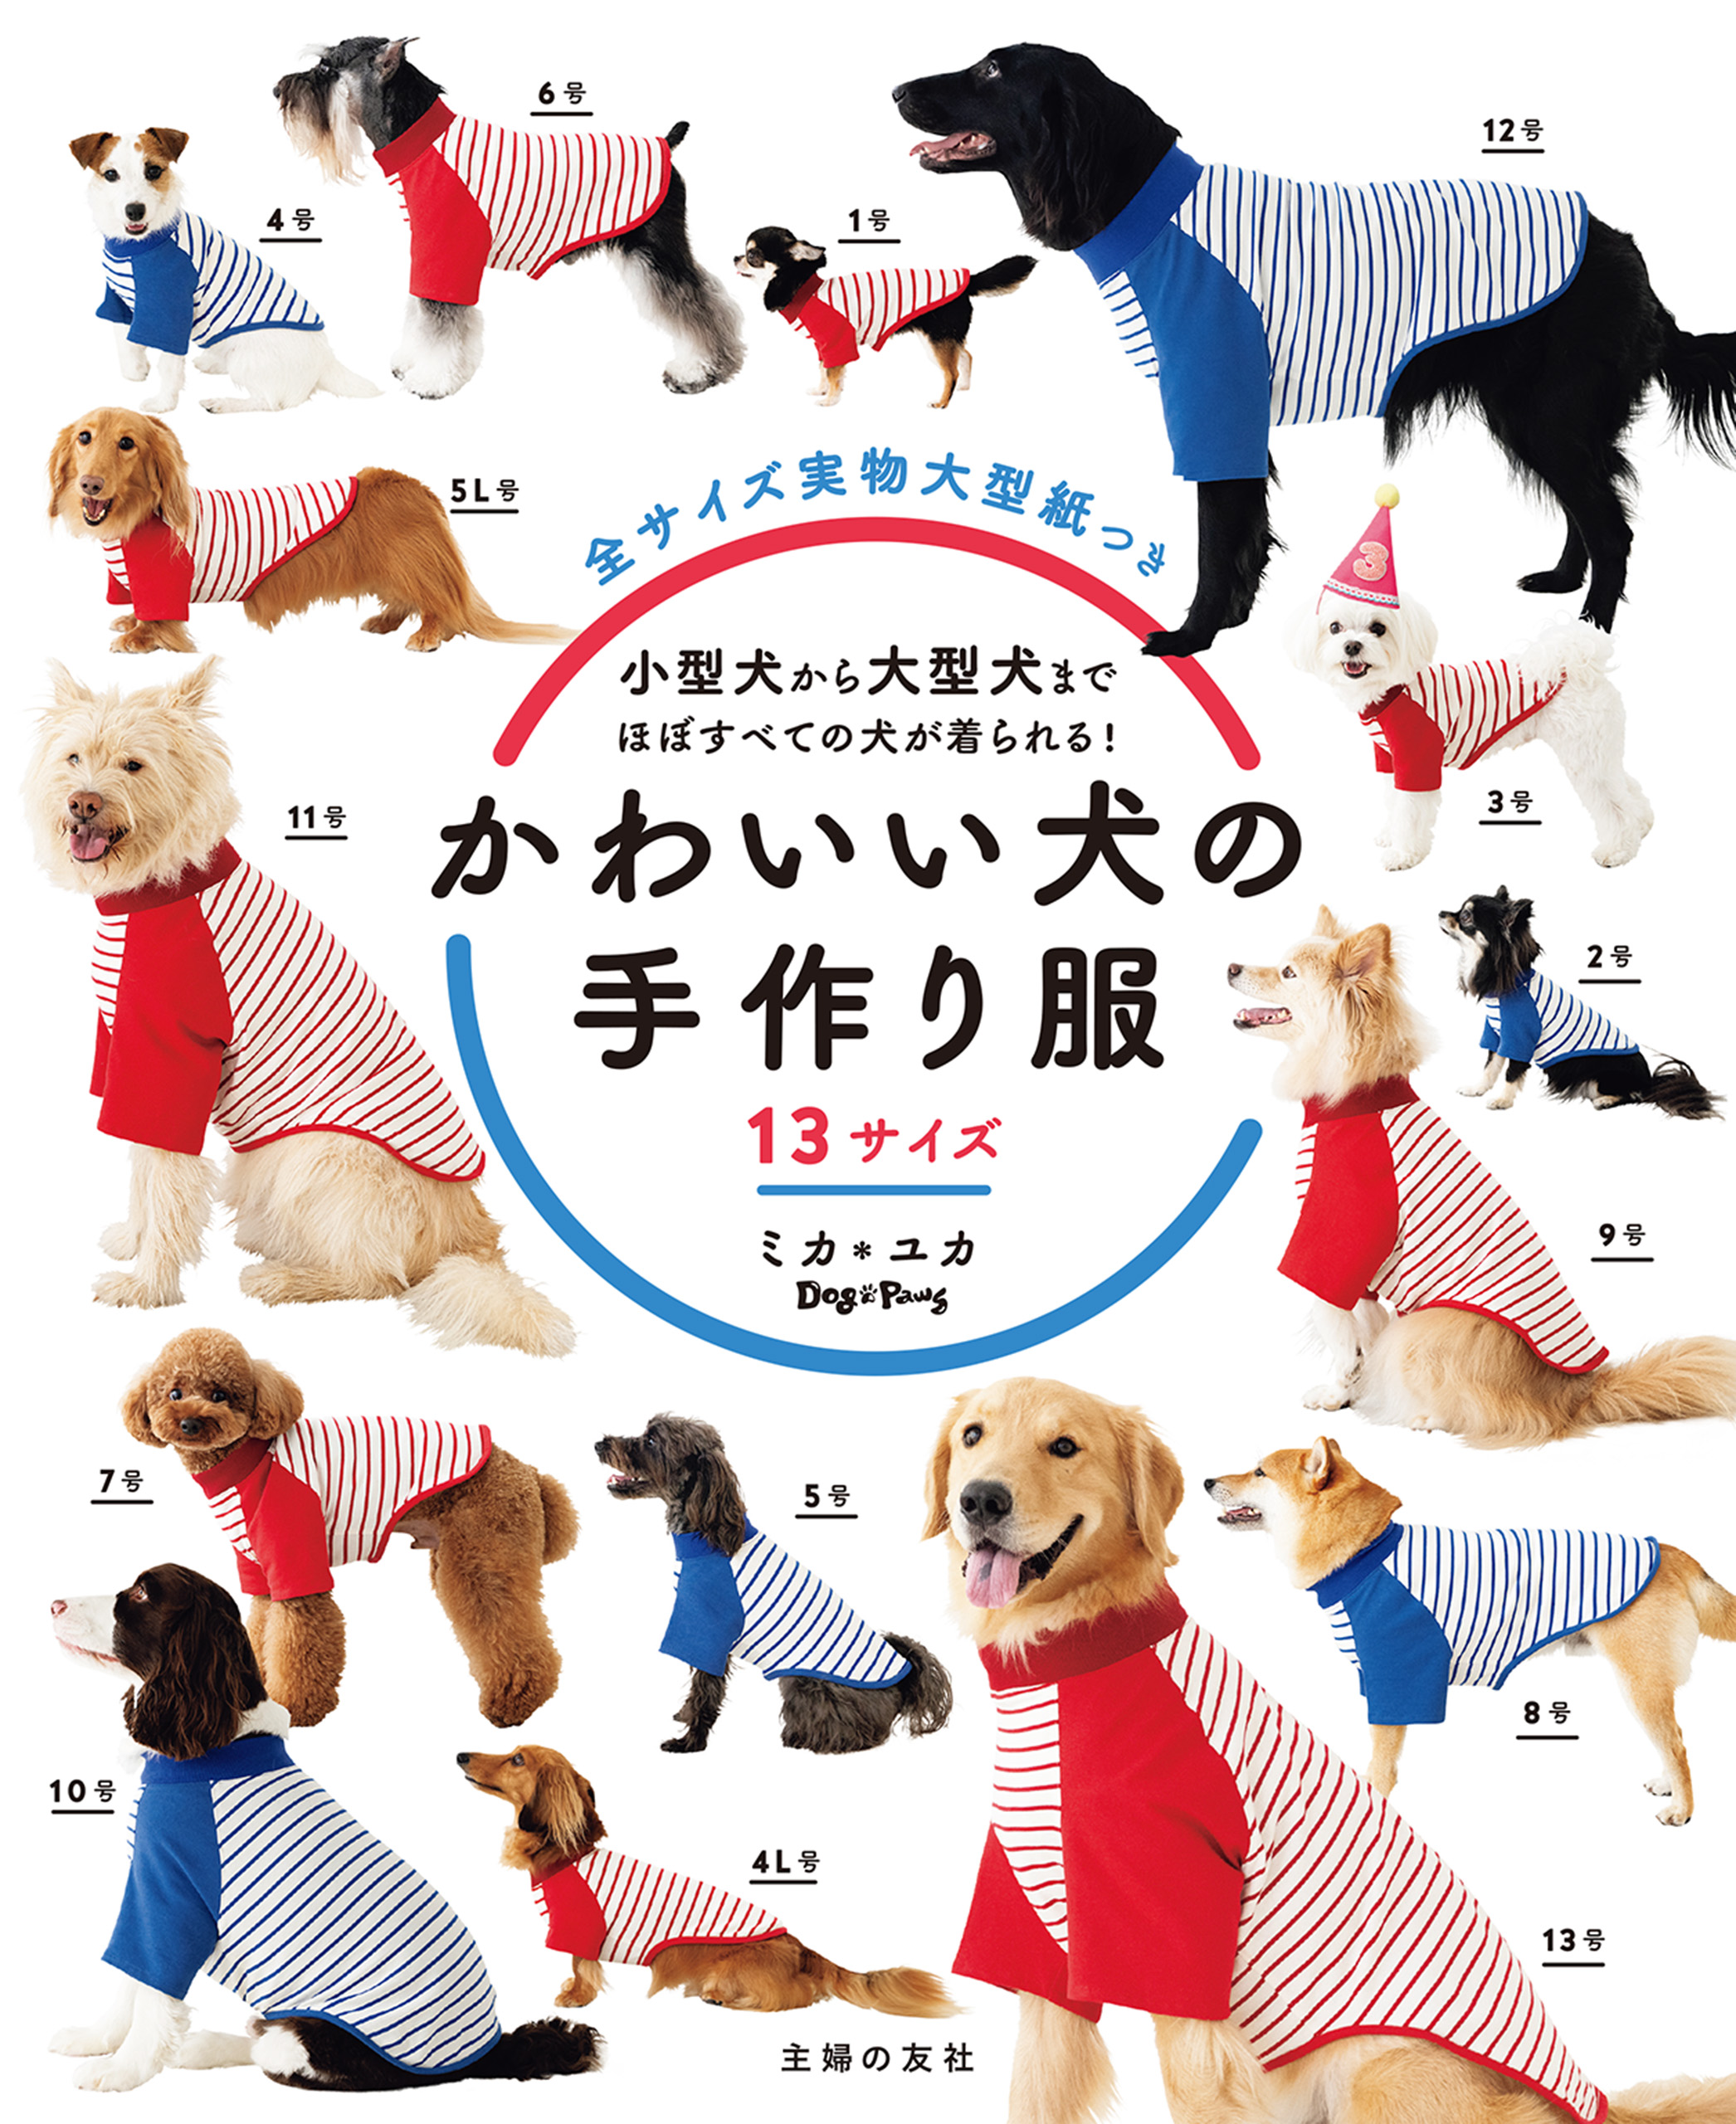 ハンドメイド 犬服 手編み - 犬用品